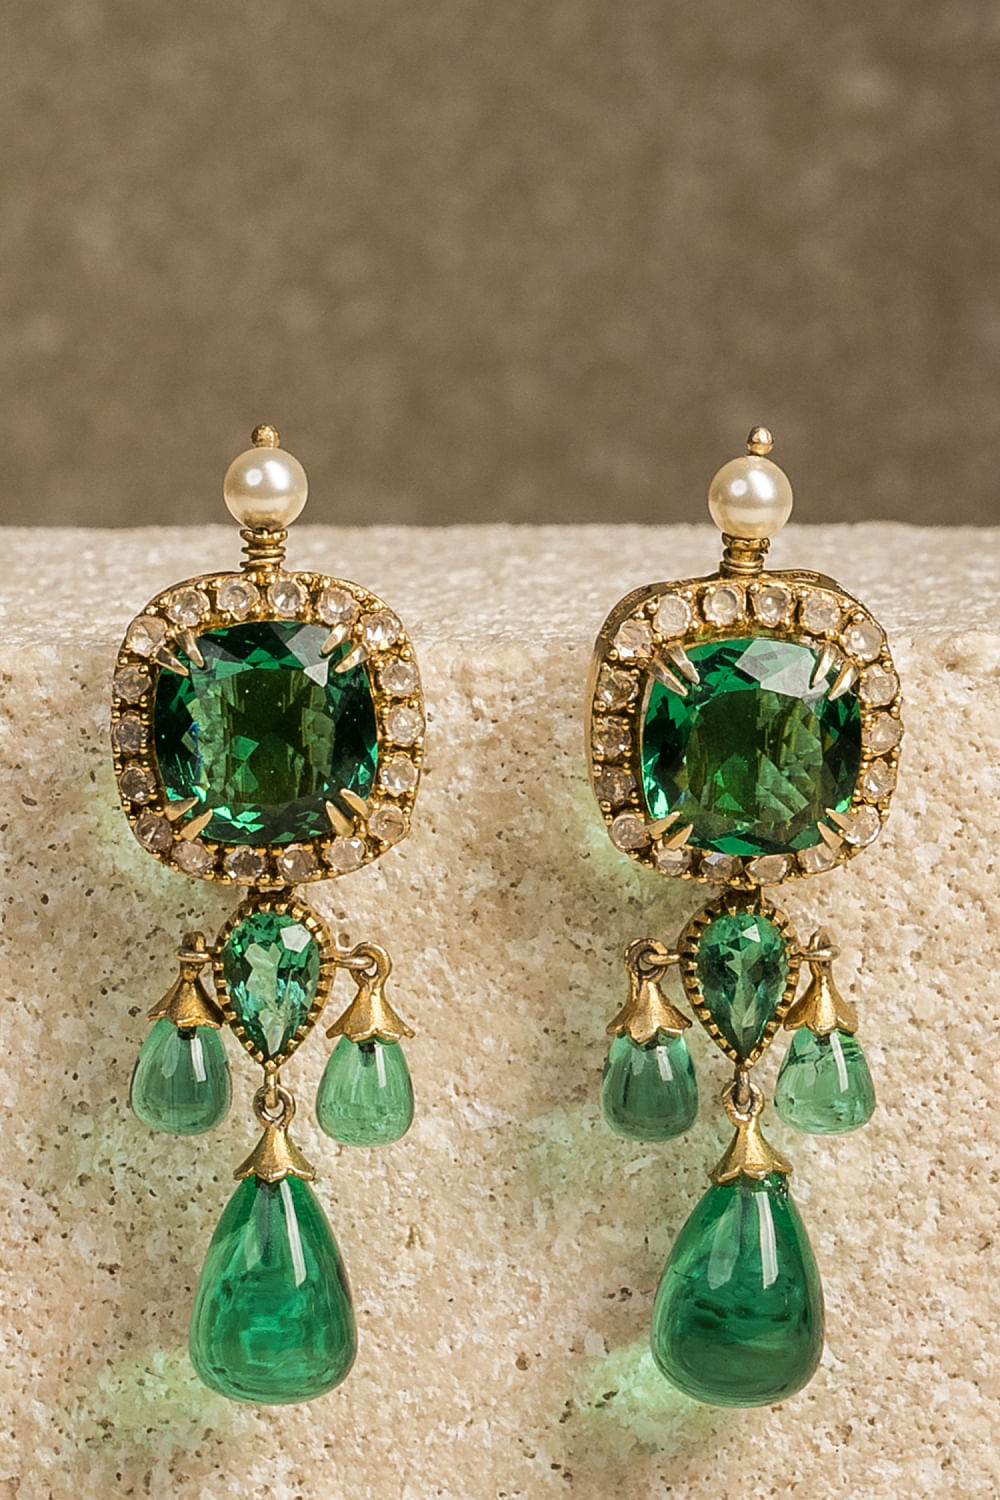 Amazon.com: Emerald Earrings Green Large Emerald green Teardrop Drop Estate  Style Earrings for Women Rhinestone Crystal Fashion Prom Wedding Waterdrop Dangle  Earrings: Clothing, Shoes & Jewelry